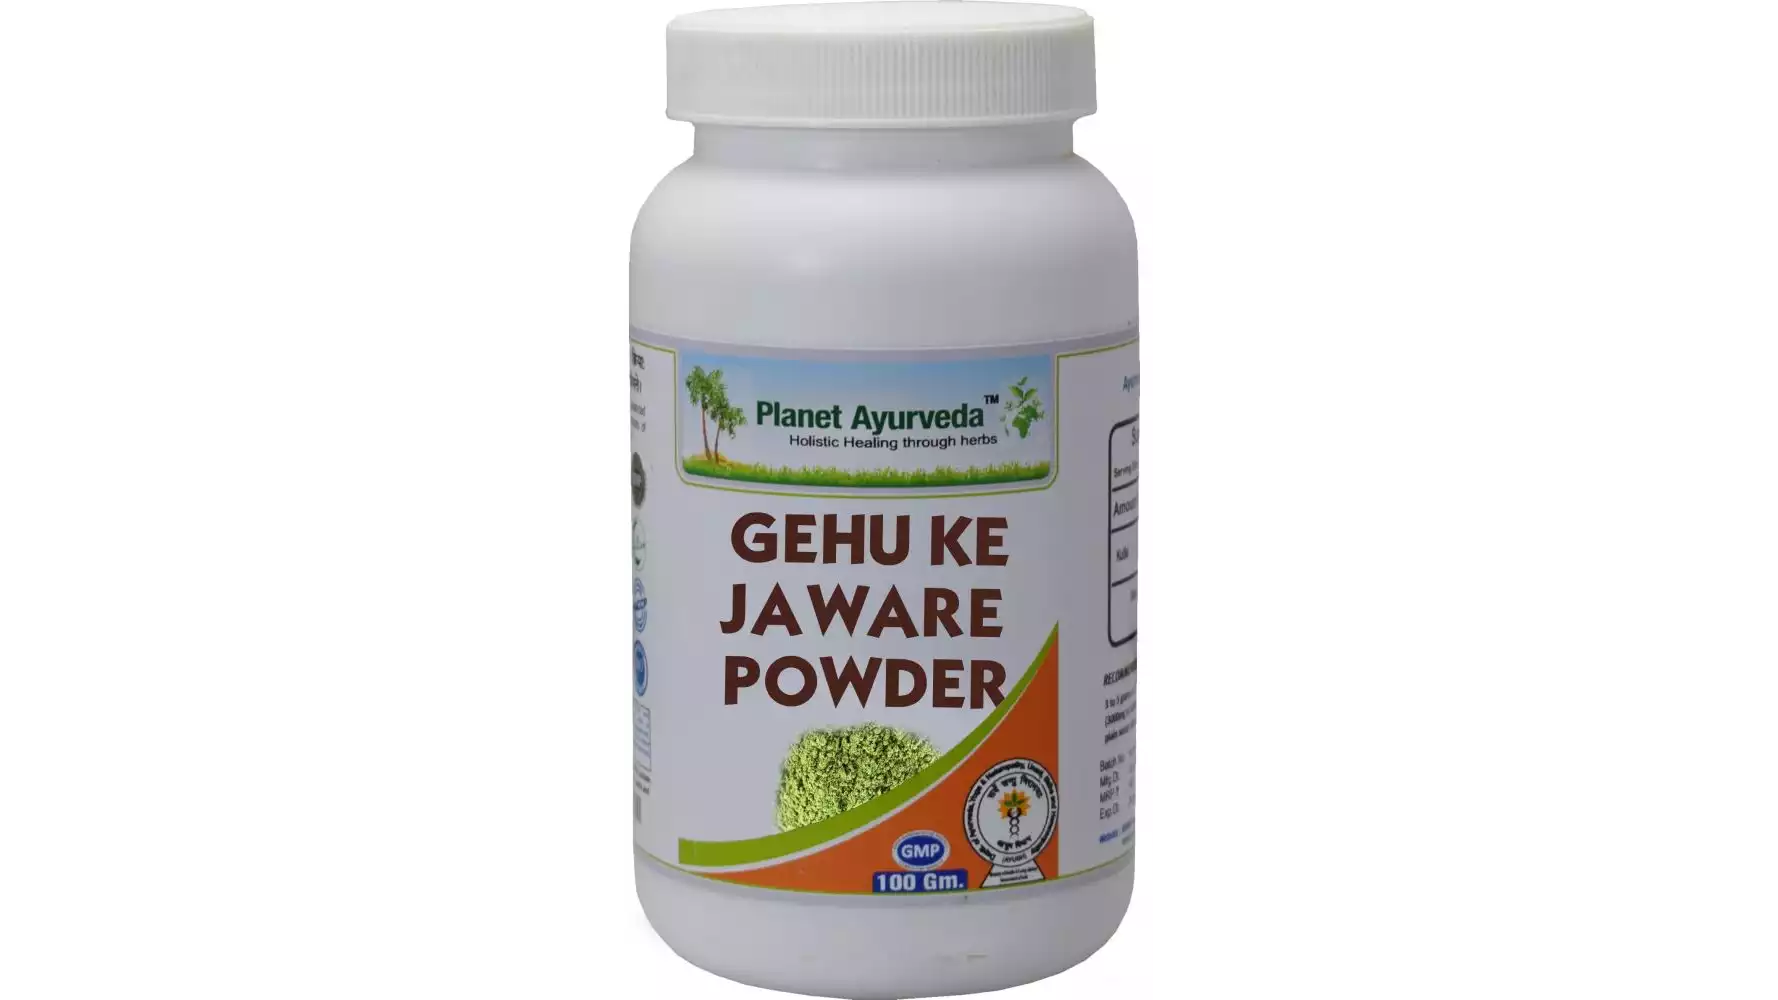 Planet Ayurveda Gehu Ke Jaware Powder (100g, Pack of 2)